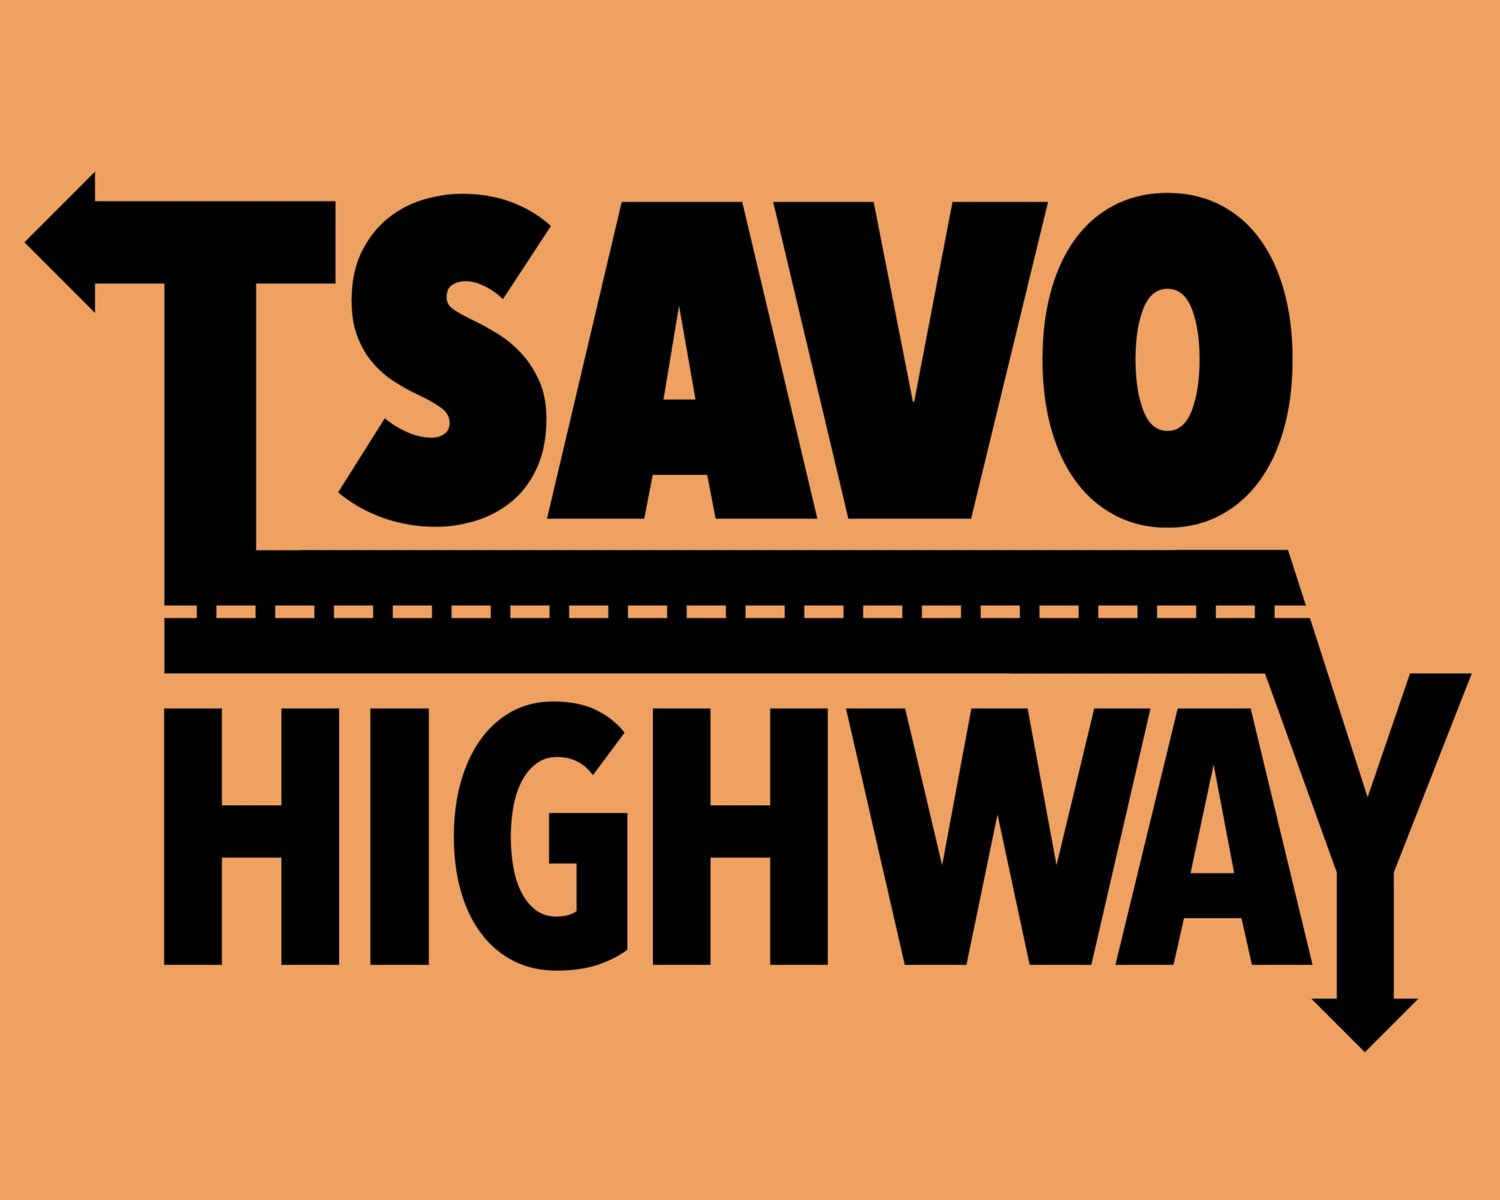 Tsavo Highway